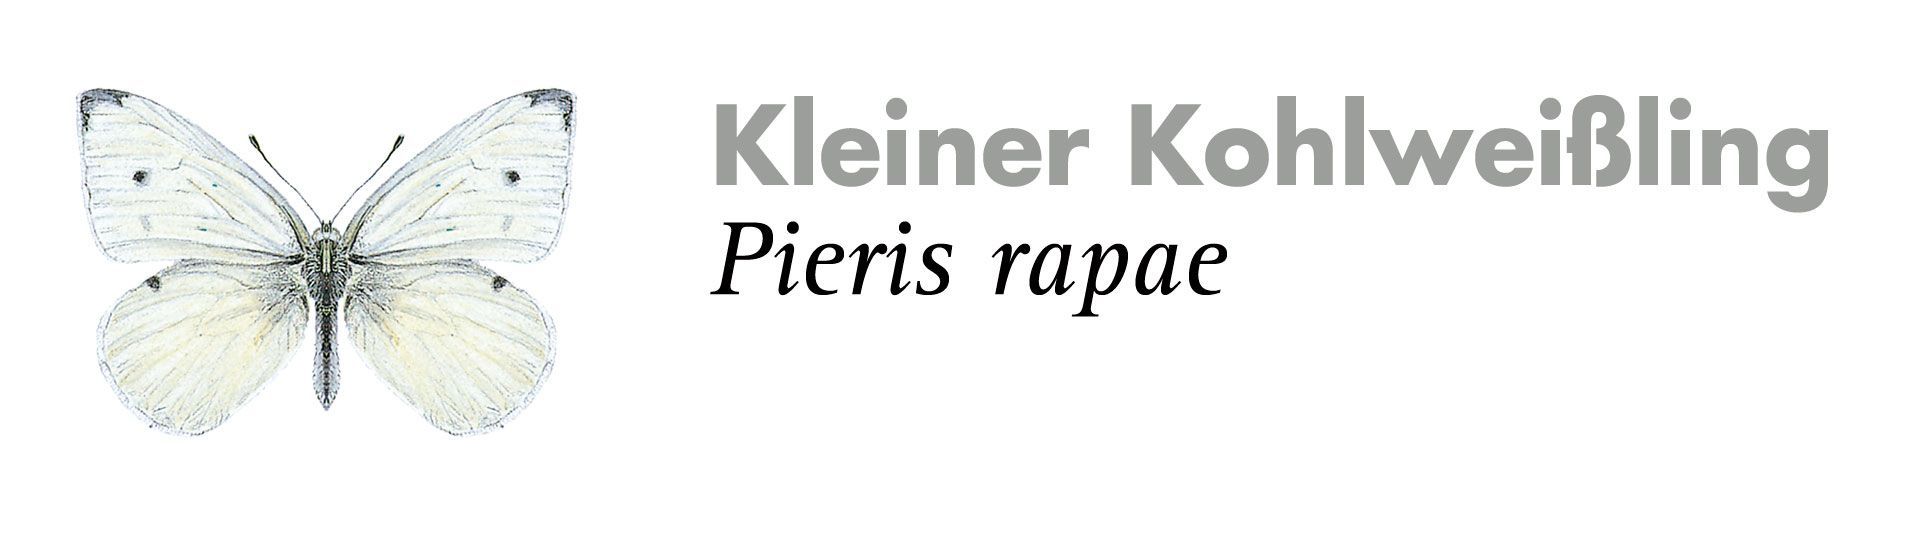 Kleiner Kohlweißling. Grafik: Haupt Verlag AG